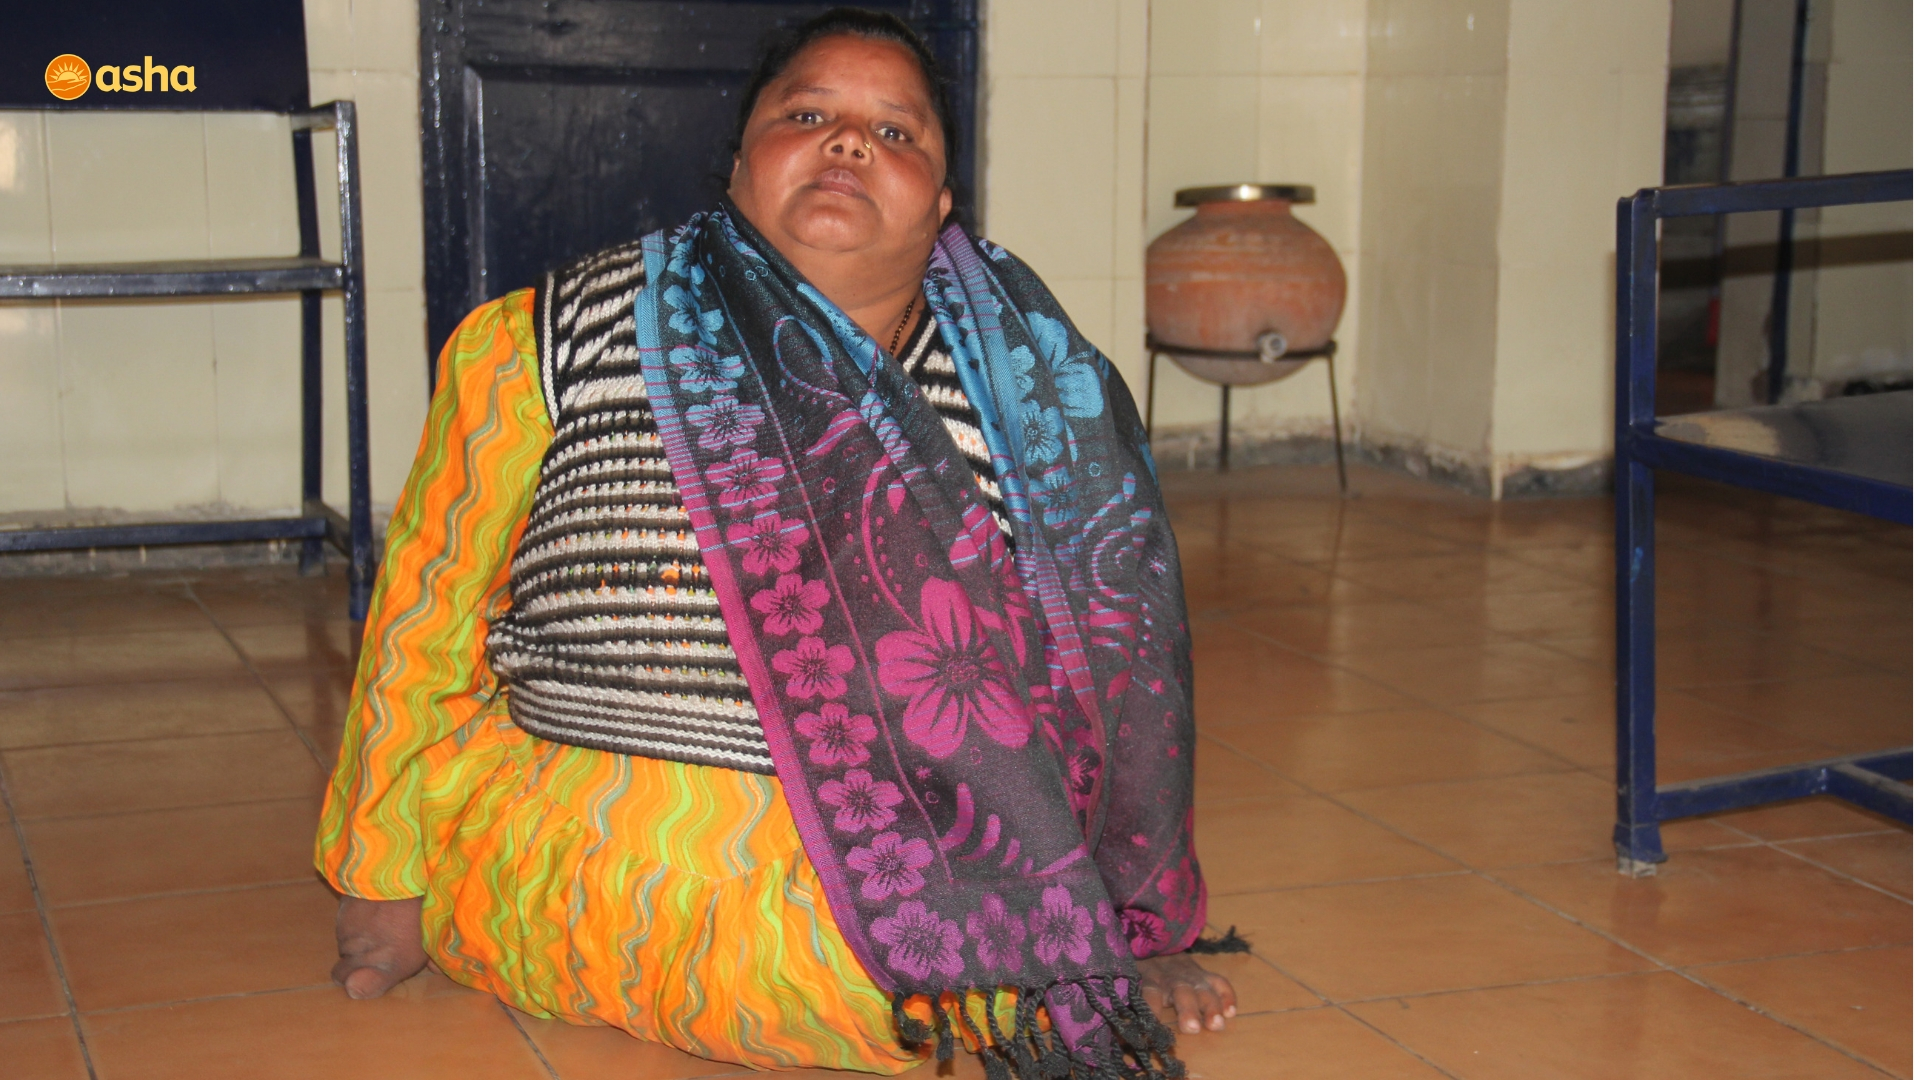 Guddi visiting Asha center at Mayapuri slum community